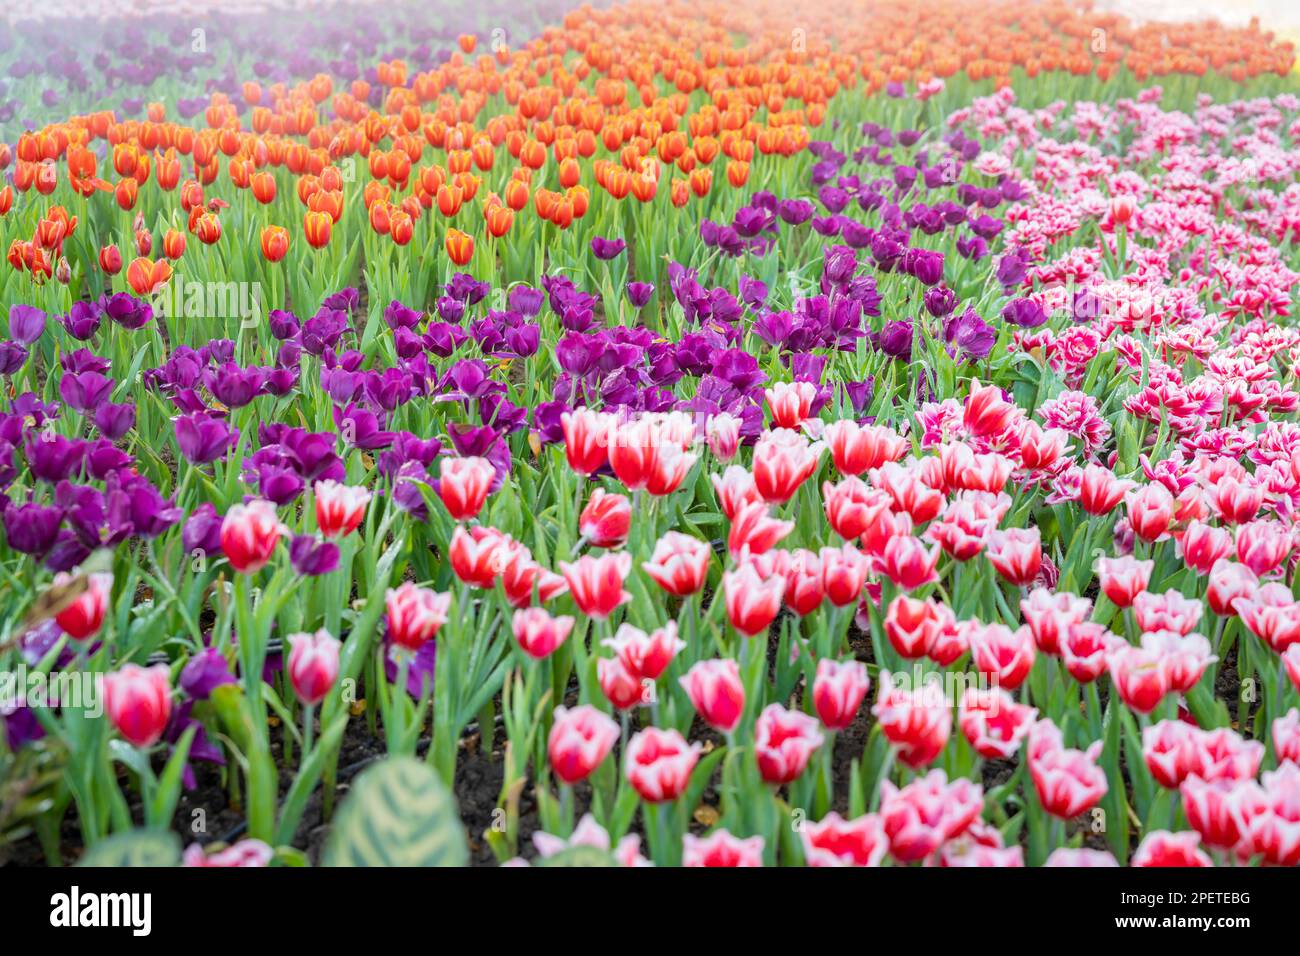 Gartenfeld mit Tulpen in verschiedenen hellen, regenbogenfarbenen Blütenblättern, wunderschöner Farbstrauß bei Tageslicht im Ziergarten Stockfoto